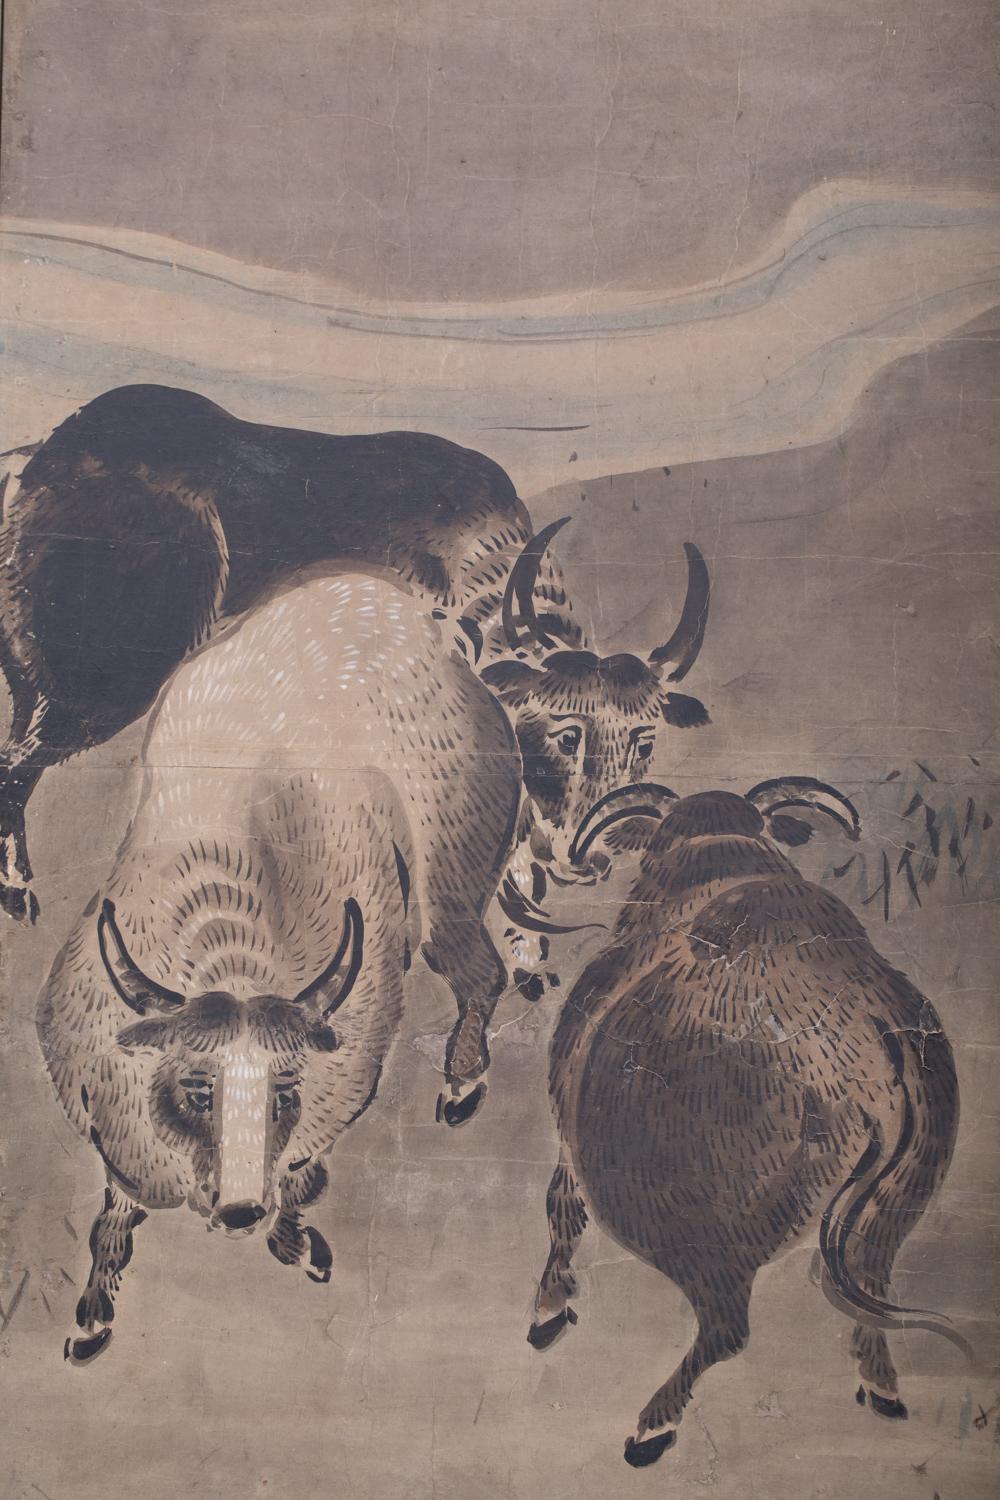 Sumi (Tusche) Malerei von Stieren neben einem Bach mit minimalen Farben auf Maulbeerpapier mit Seidenbrokatbordüre.
 